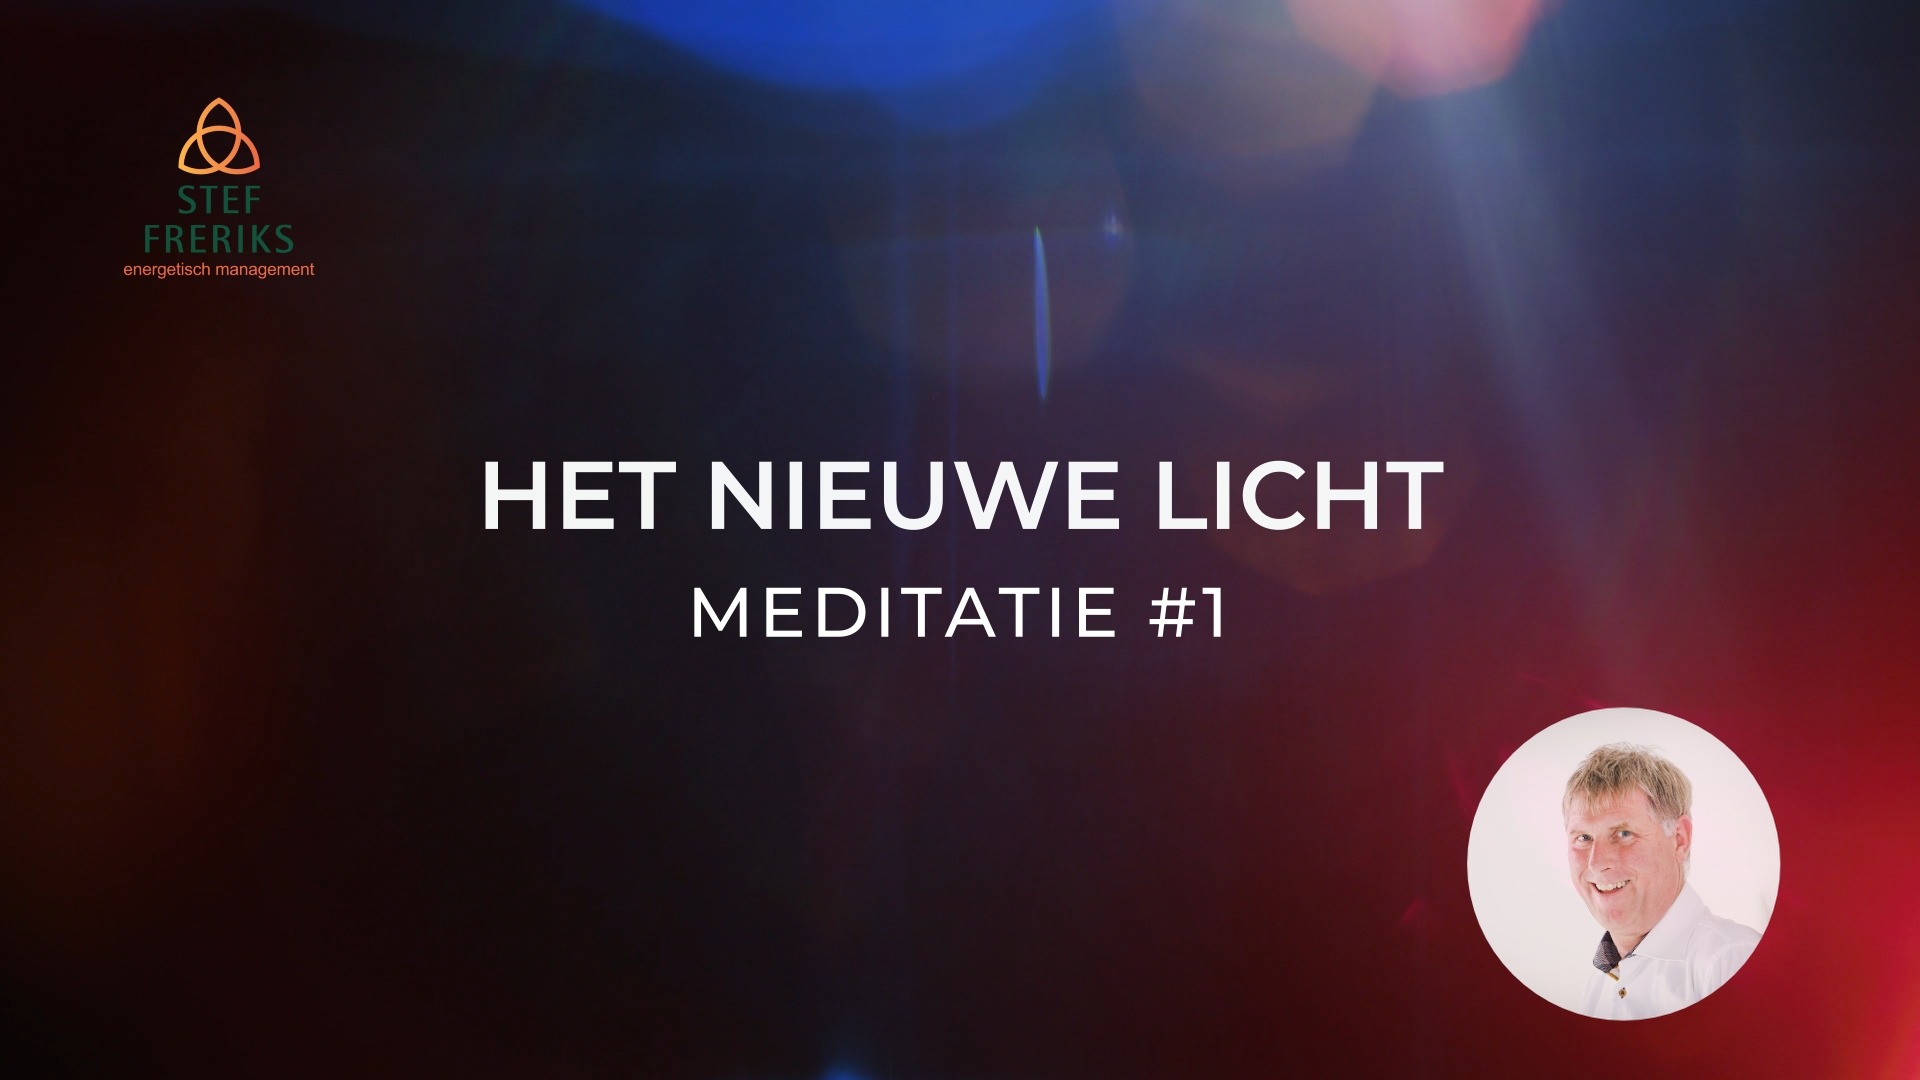 Meditatie #1 uit de serie Het Nieuwe Licht: Het Nieuwe Licht